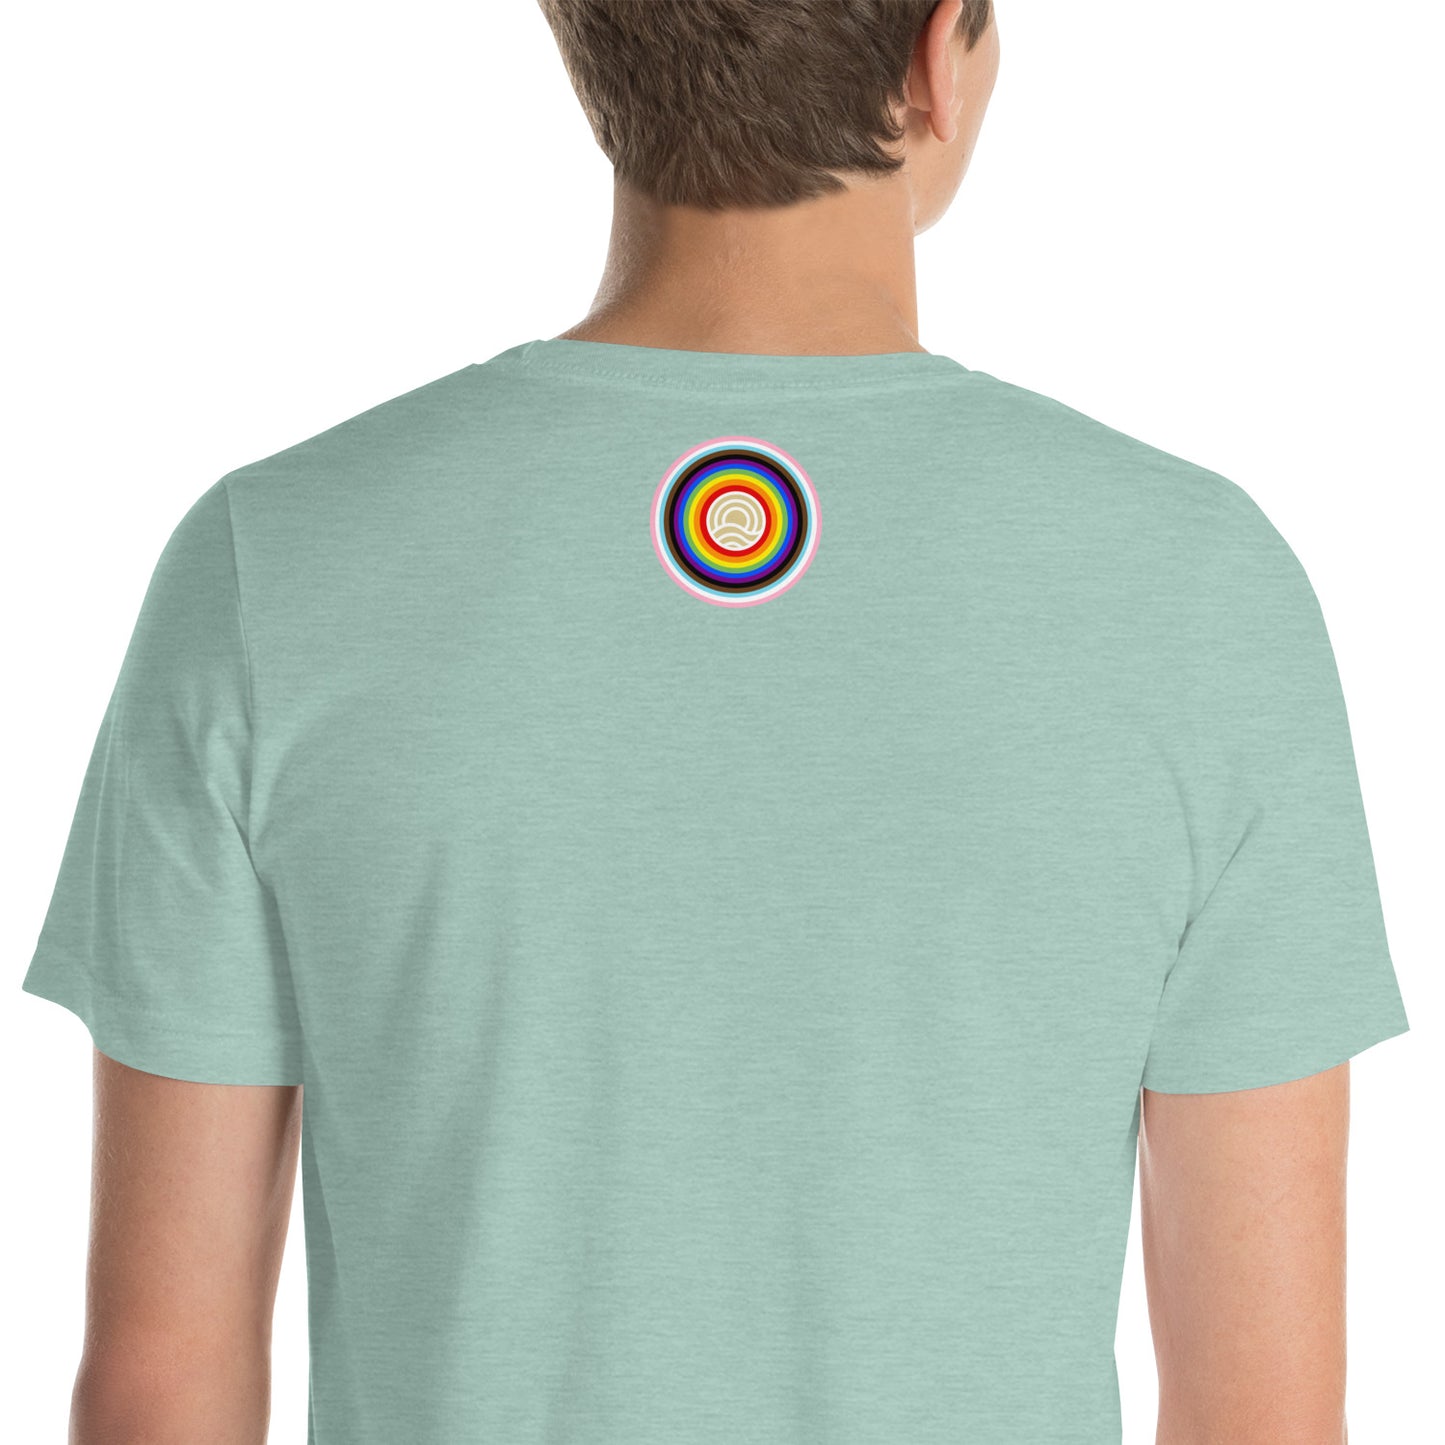 Unisex Raise Your Hands Pride T-Shirt (Lighter Colors)